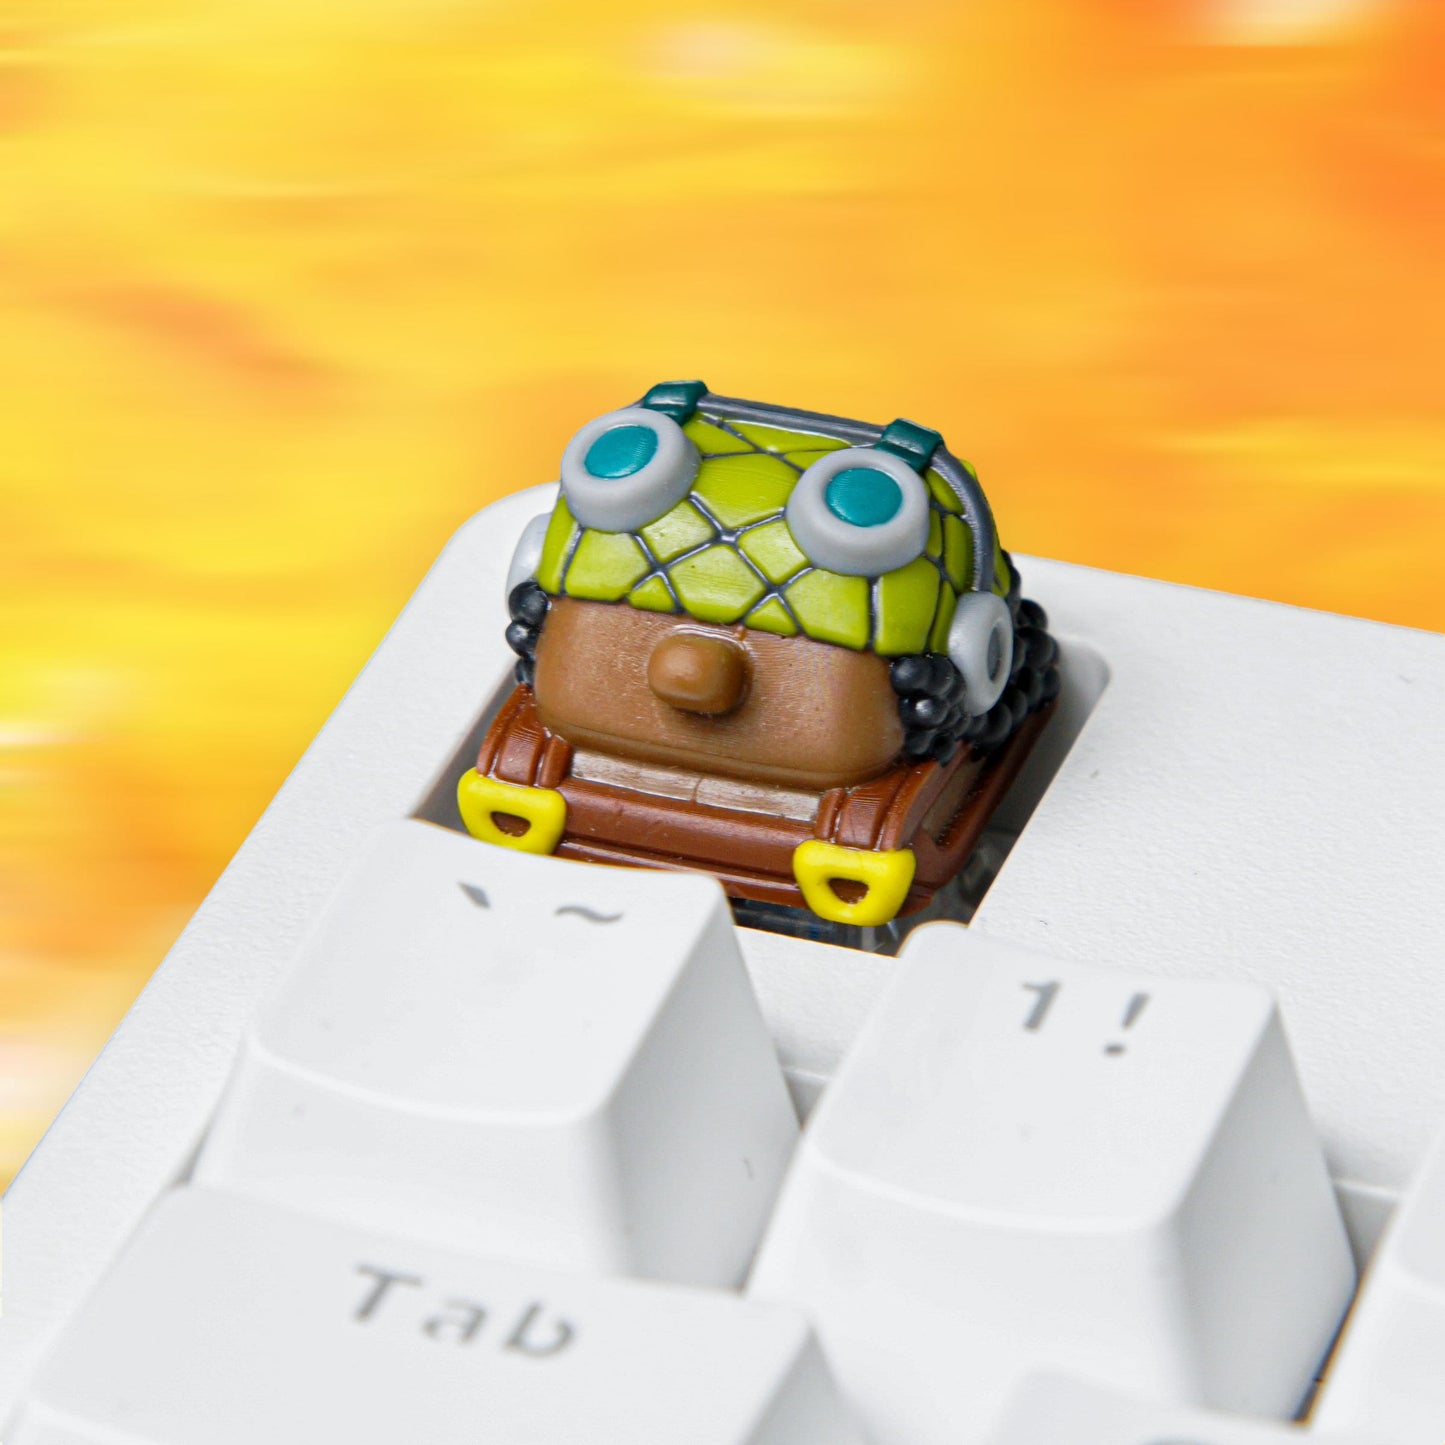 S-traw.Hat Pi.rates Keycap- One-Pie.ce Keycap- Anime Keycap- Keycap for MX Cherry Switches Mechanical Keyboard - Datkey Studio